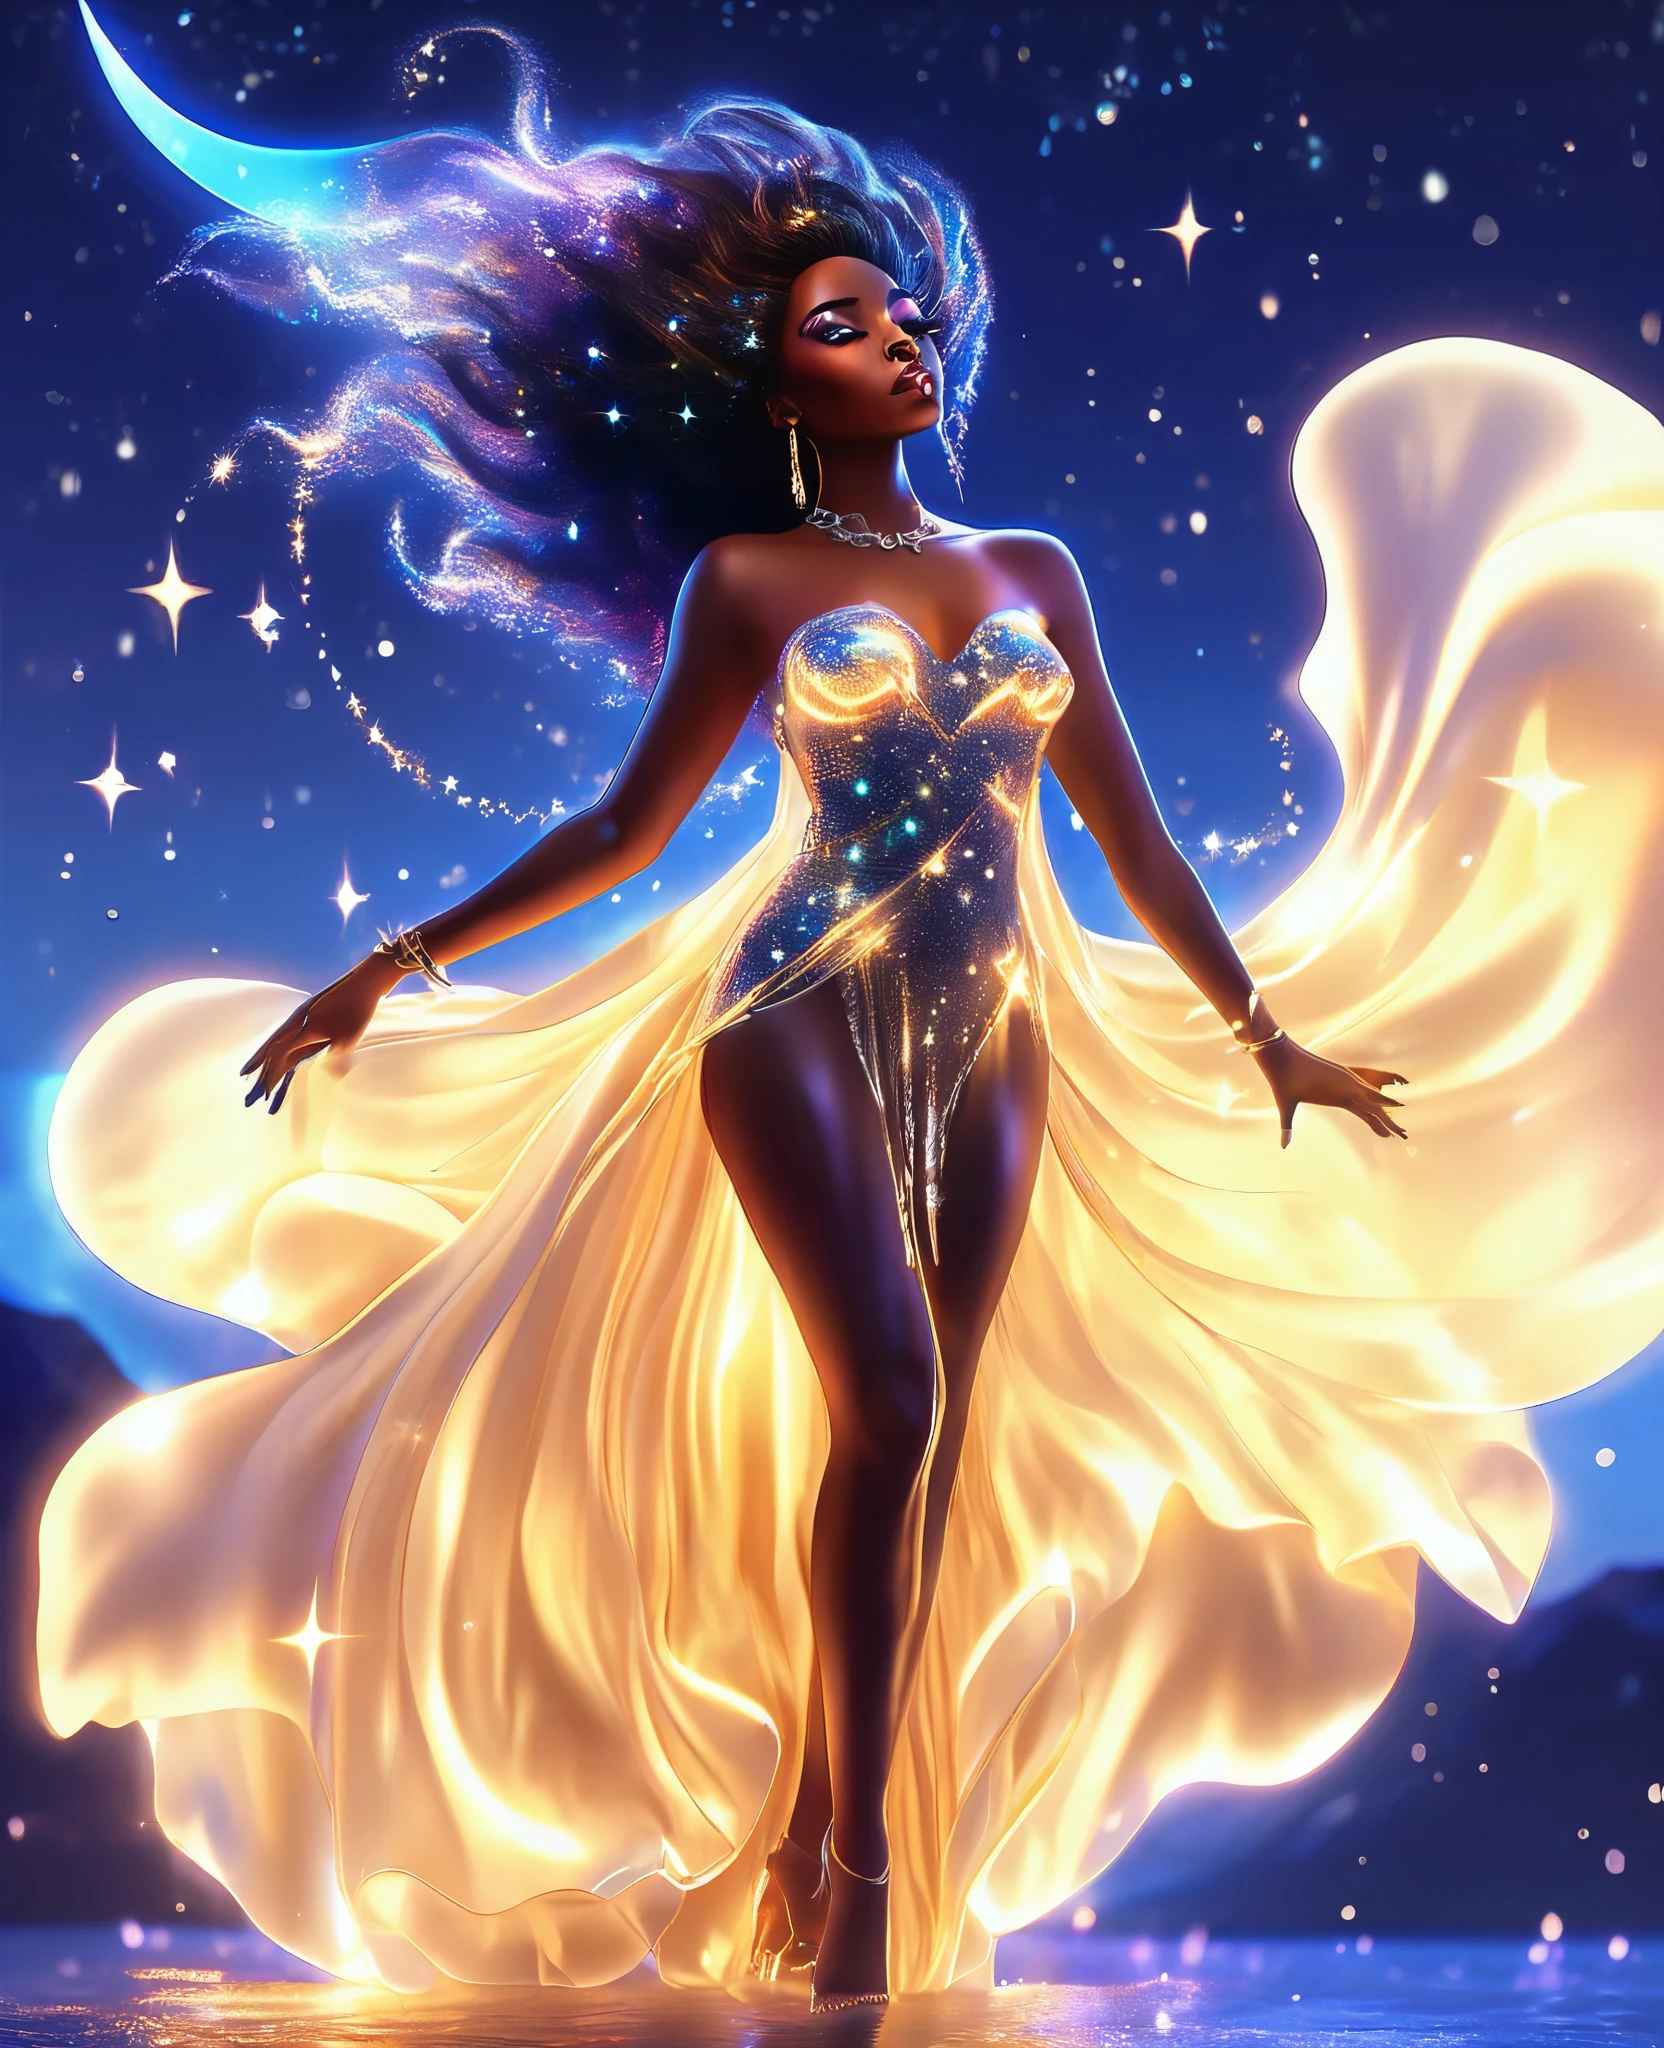 Une femme noire lumineuse formée entièrement de rayonnement, étoiles scintillantes, suspendu dans l&#39;étendue céleste, drapé dans un fluide, robe éthérée qui ondule avec sa propre vie. Son transparent, le corps étoilé scintille d&#39;une lumière d&#39;un autre monde, comme si elle était vivante, galaxie qui respire. Le ciel nocturne qui l&#39;entoure est illuminé de couleurs vibrantes, aurores boréales dansantes, ce qui reflète parfaitement le calme, océan au clair de lune ci-dessous. Créez un superbe, 32k, Ultra HD, image hyper réaliste qui capture la magie de cette scène enchanteresse, avec chaque étoile et chaque éclat qui brille.